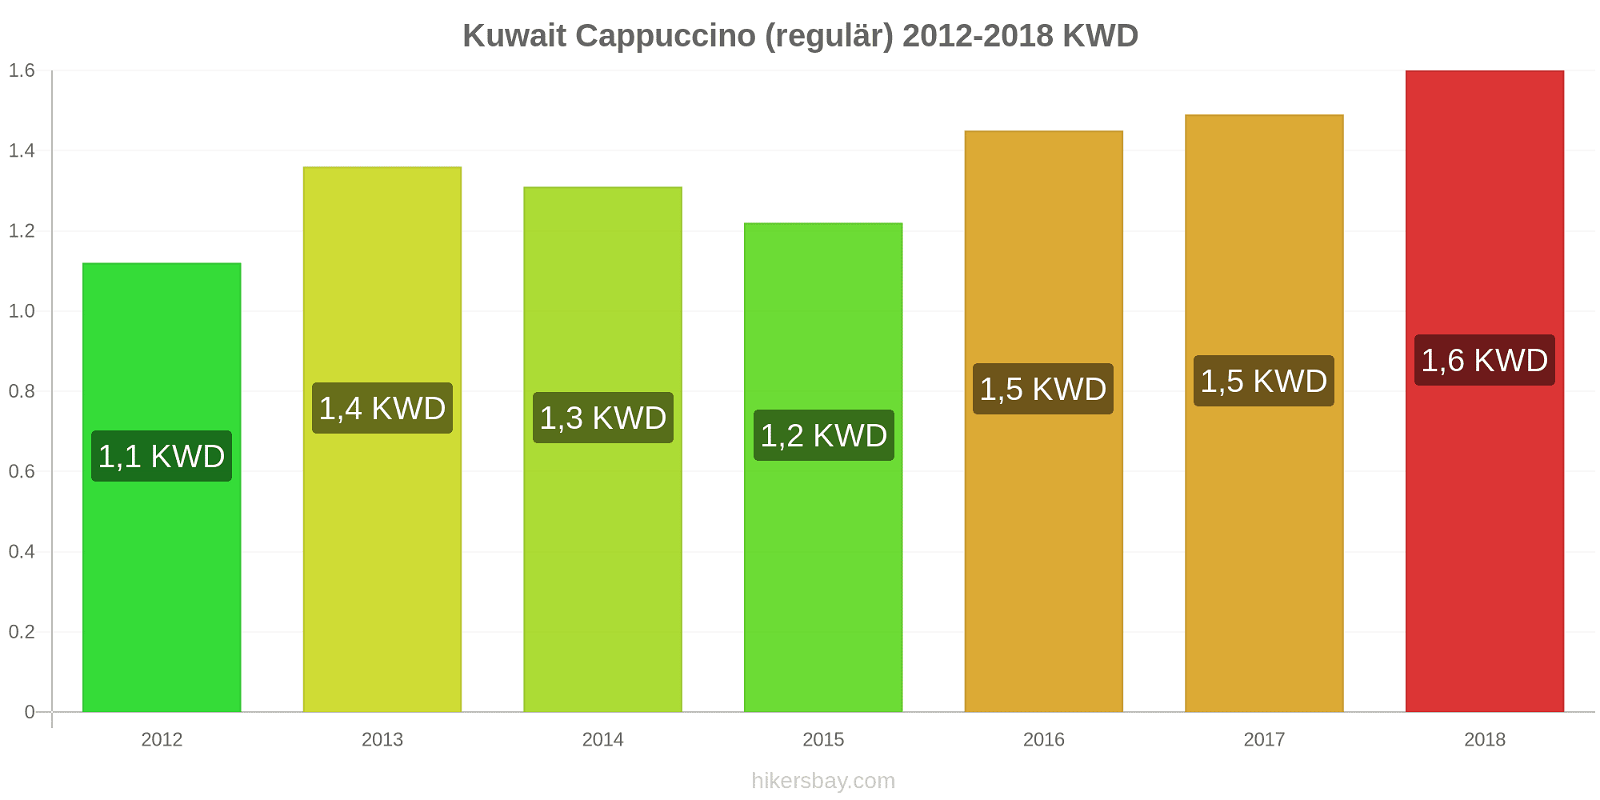 Kuwait Preisänderungen Cappuccino hikersbay.com